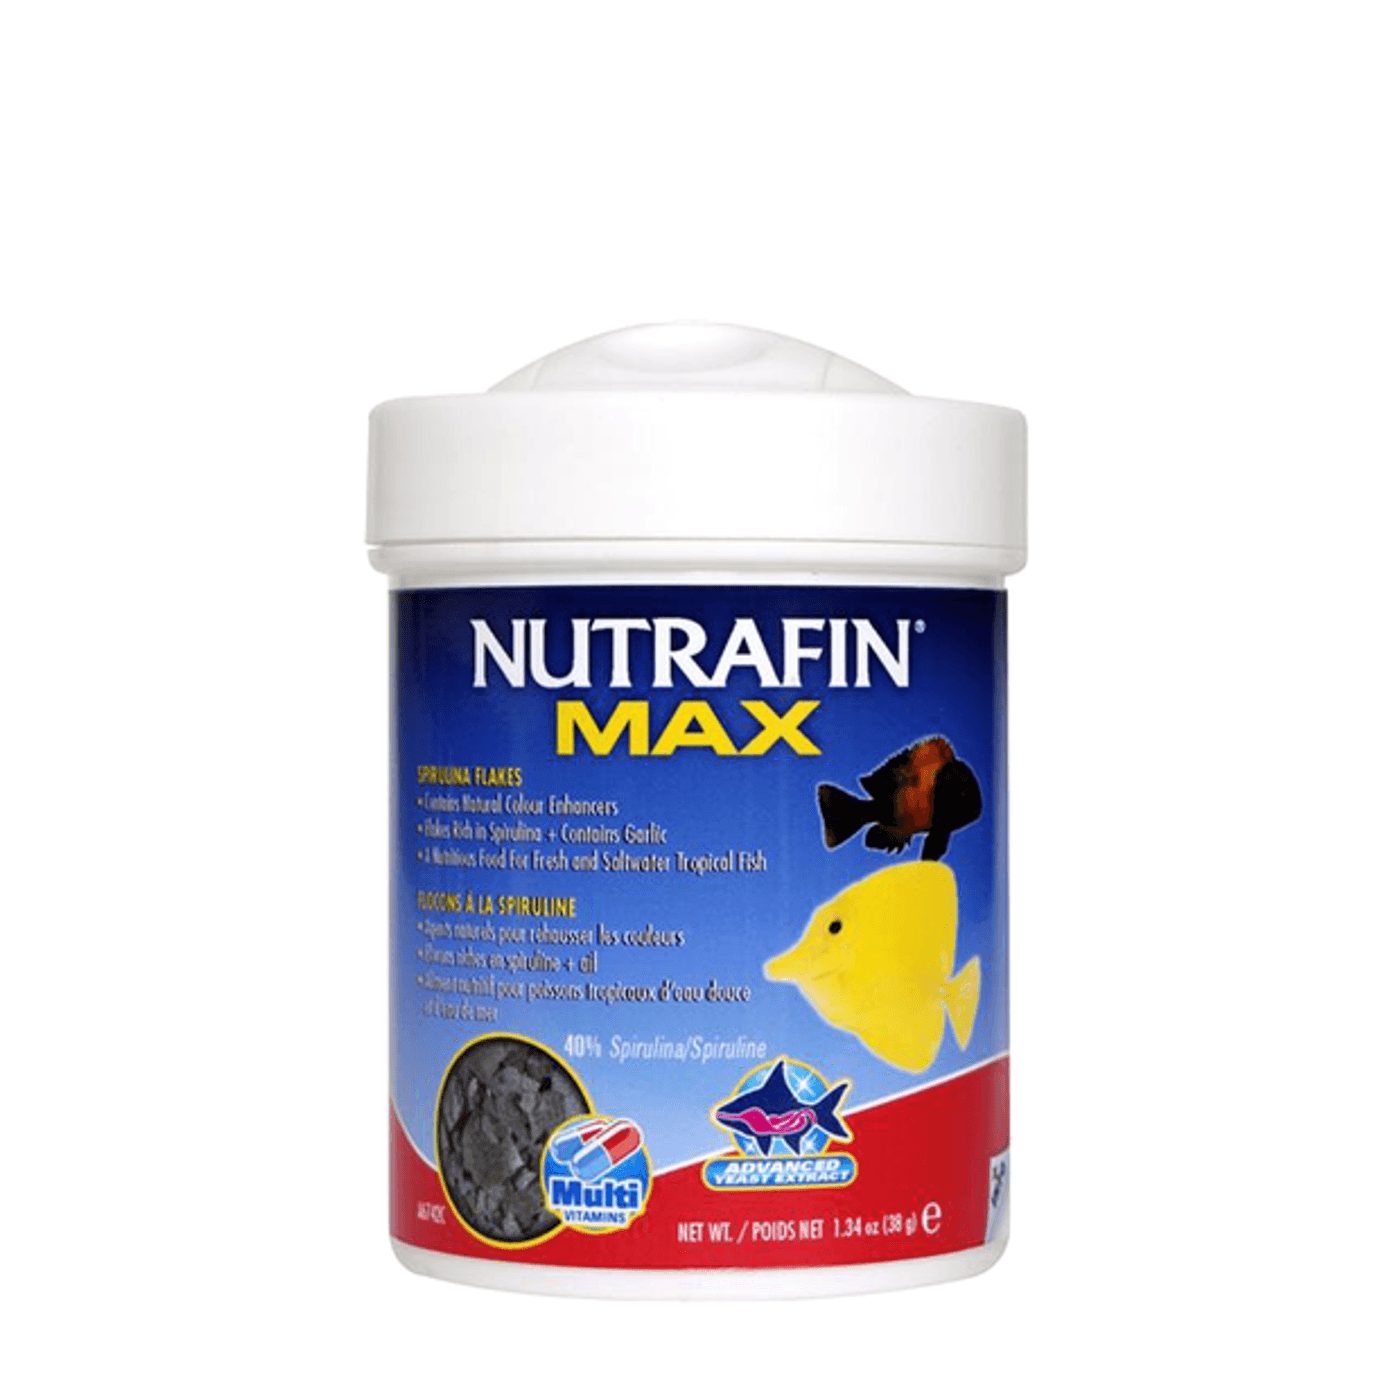 NUTRAFIN-Max-Flocos-de-Spirulina--38g-